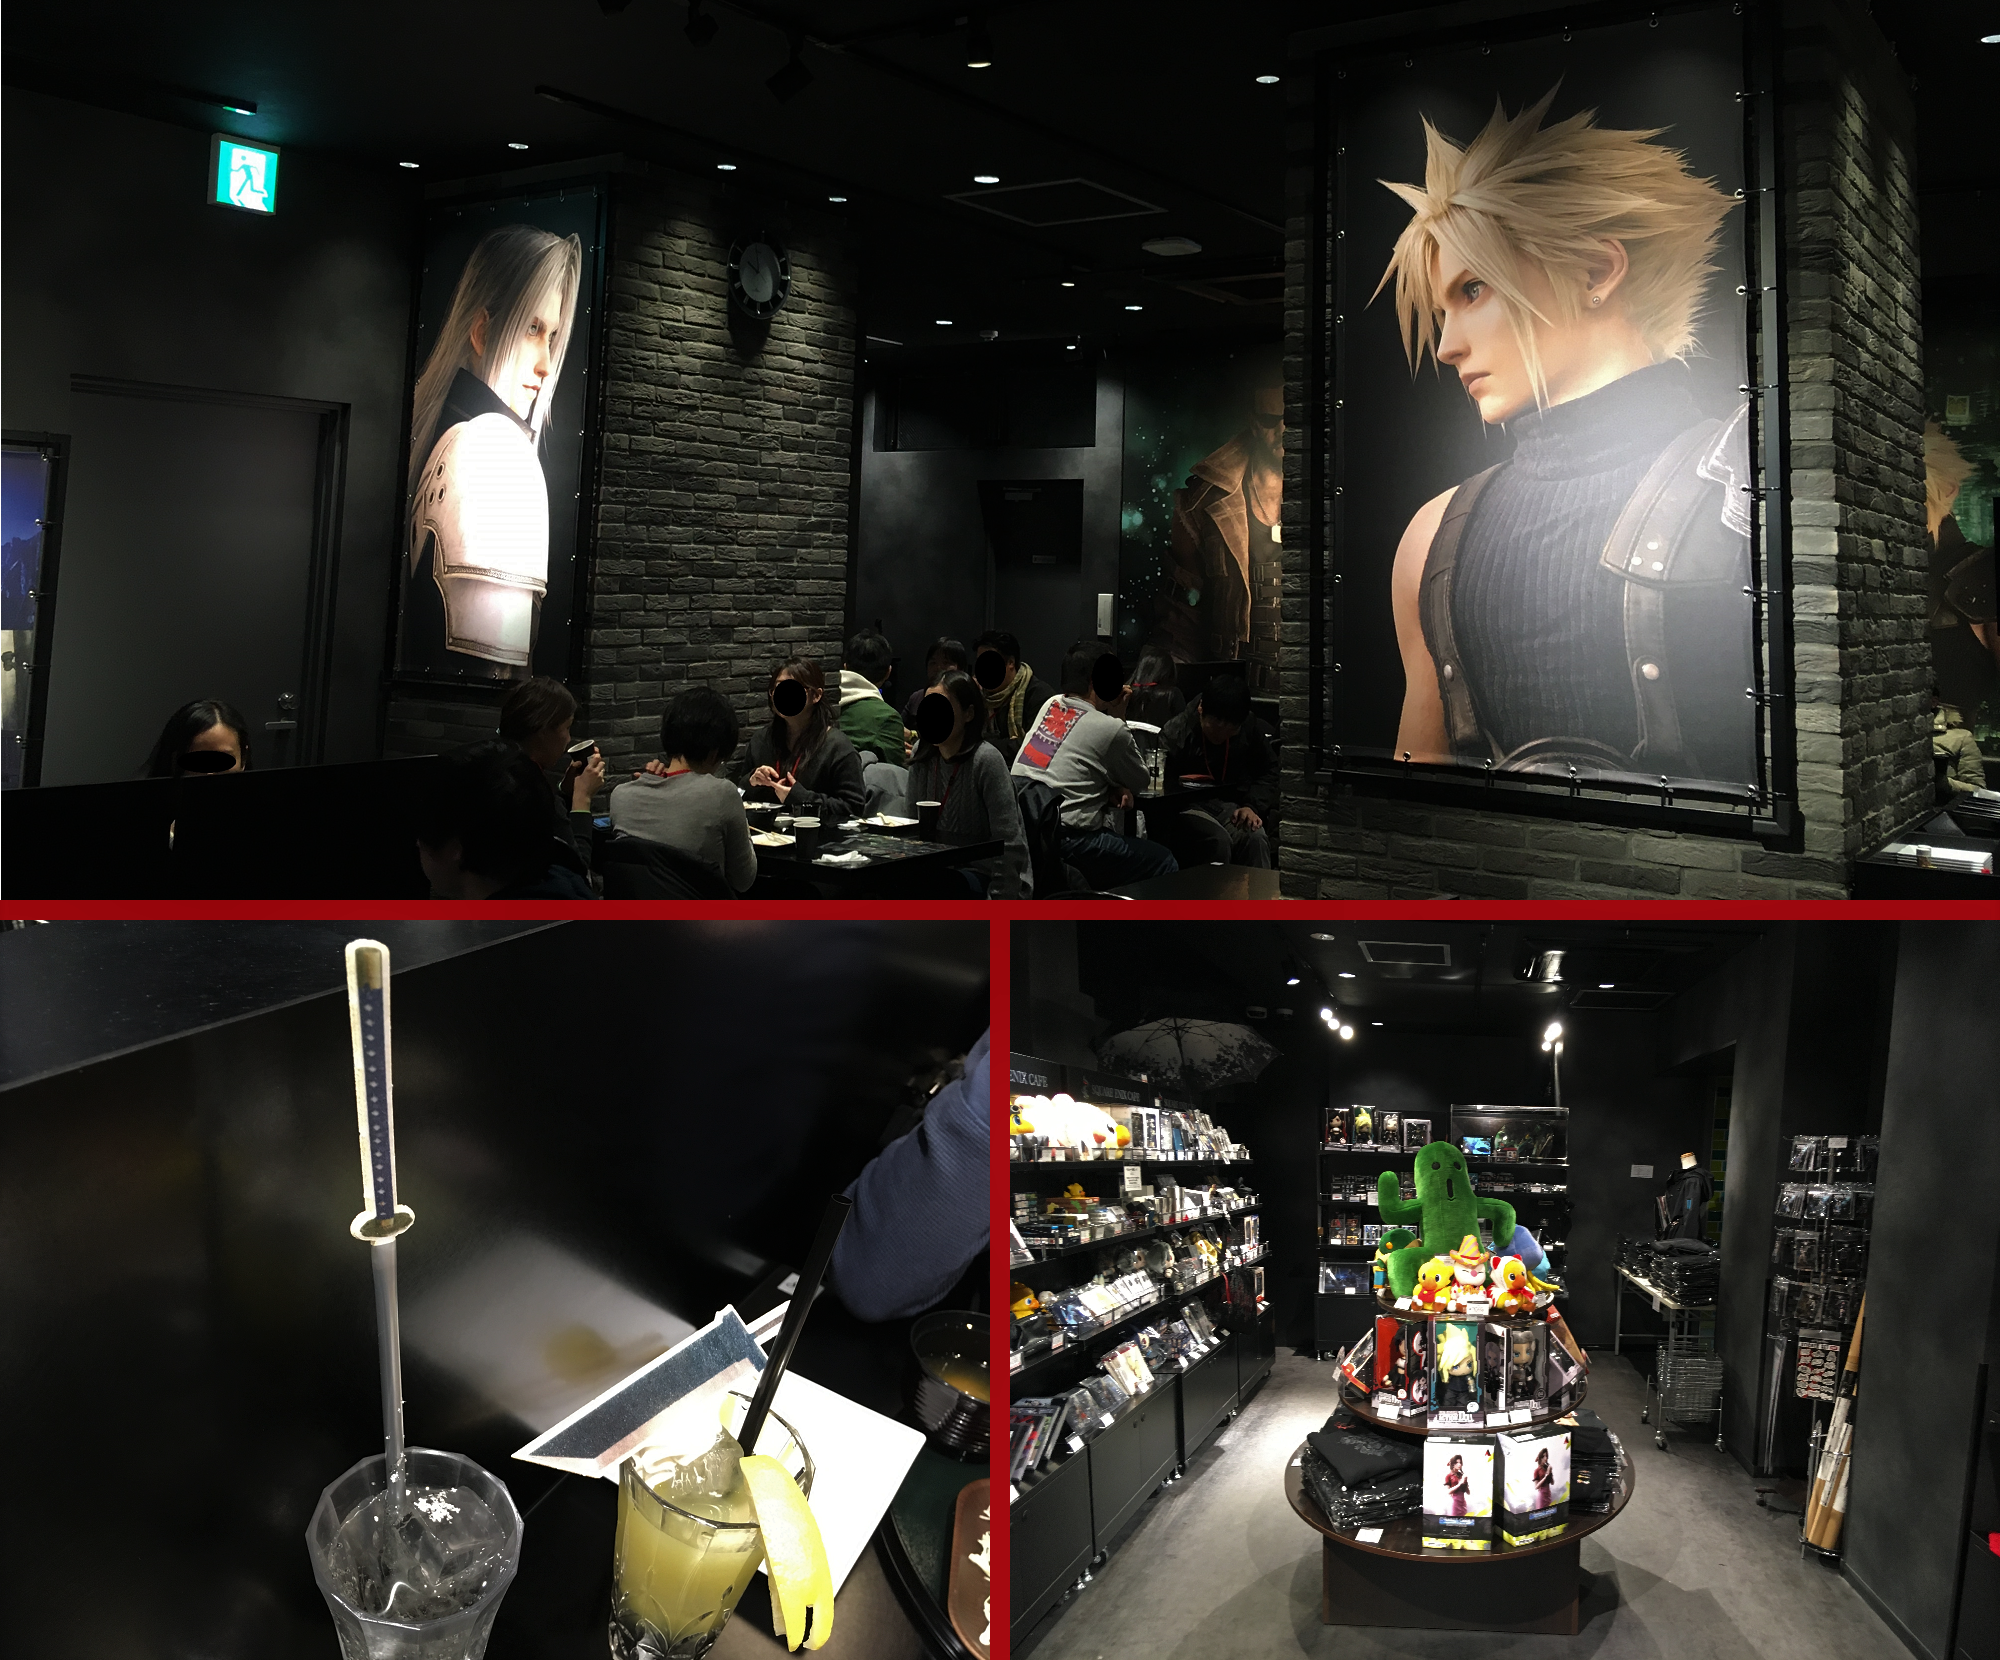 Square Enix Cafe –